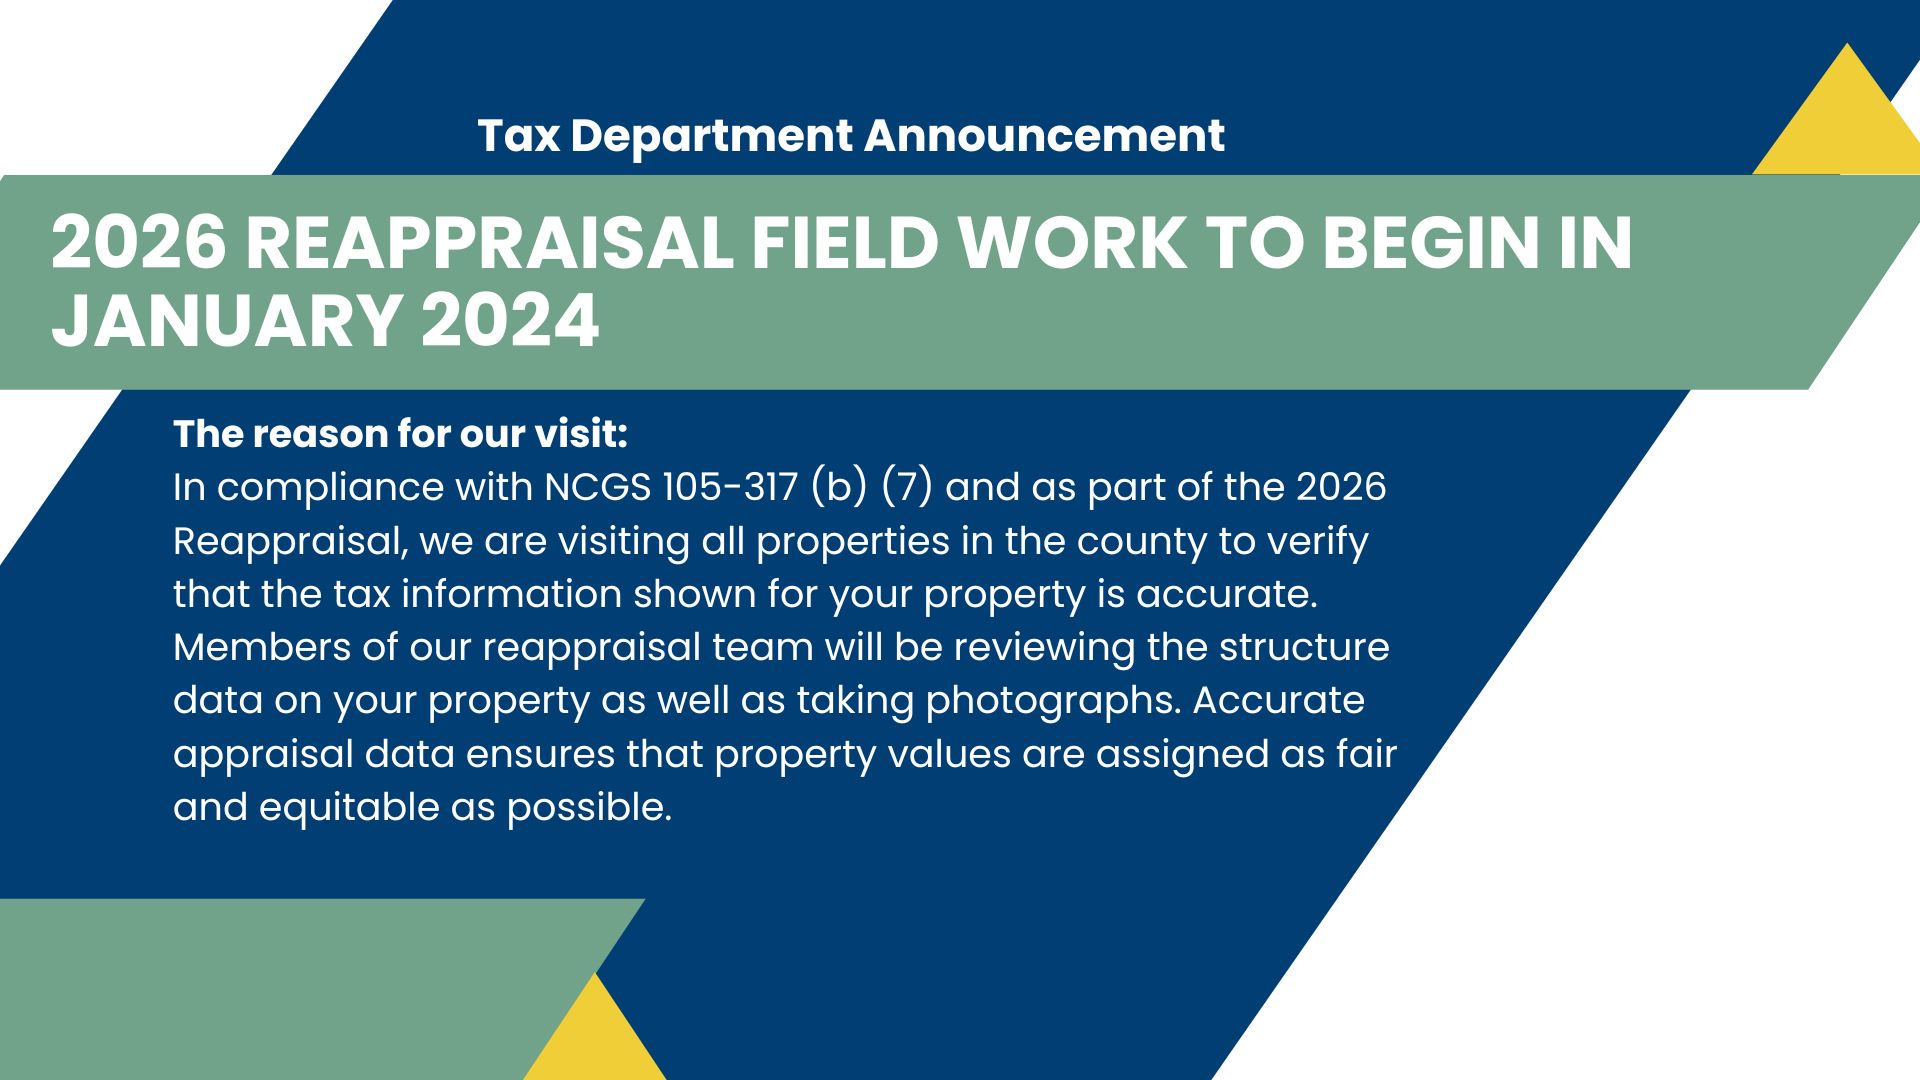 2026 Reappraisal Field Work to Begin in January 2024